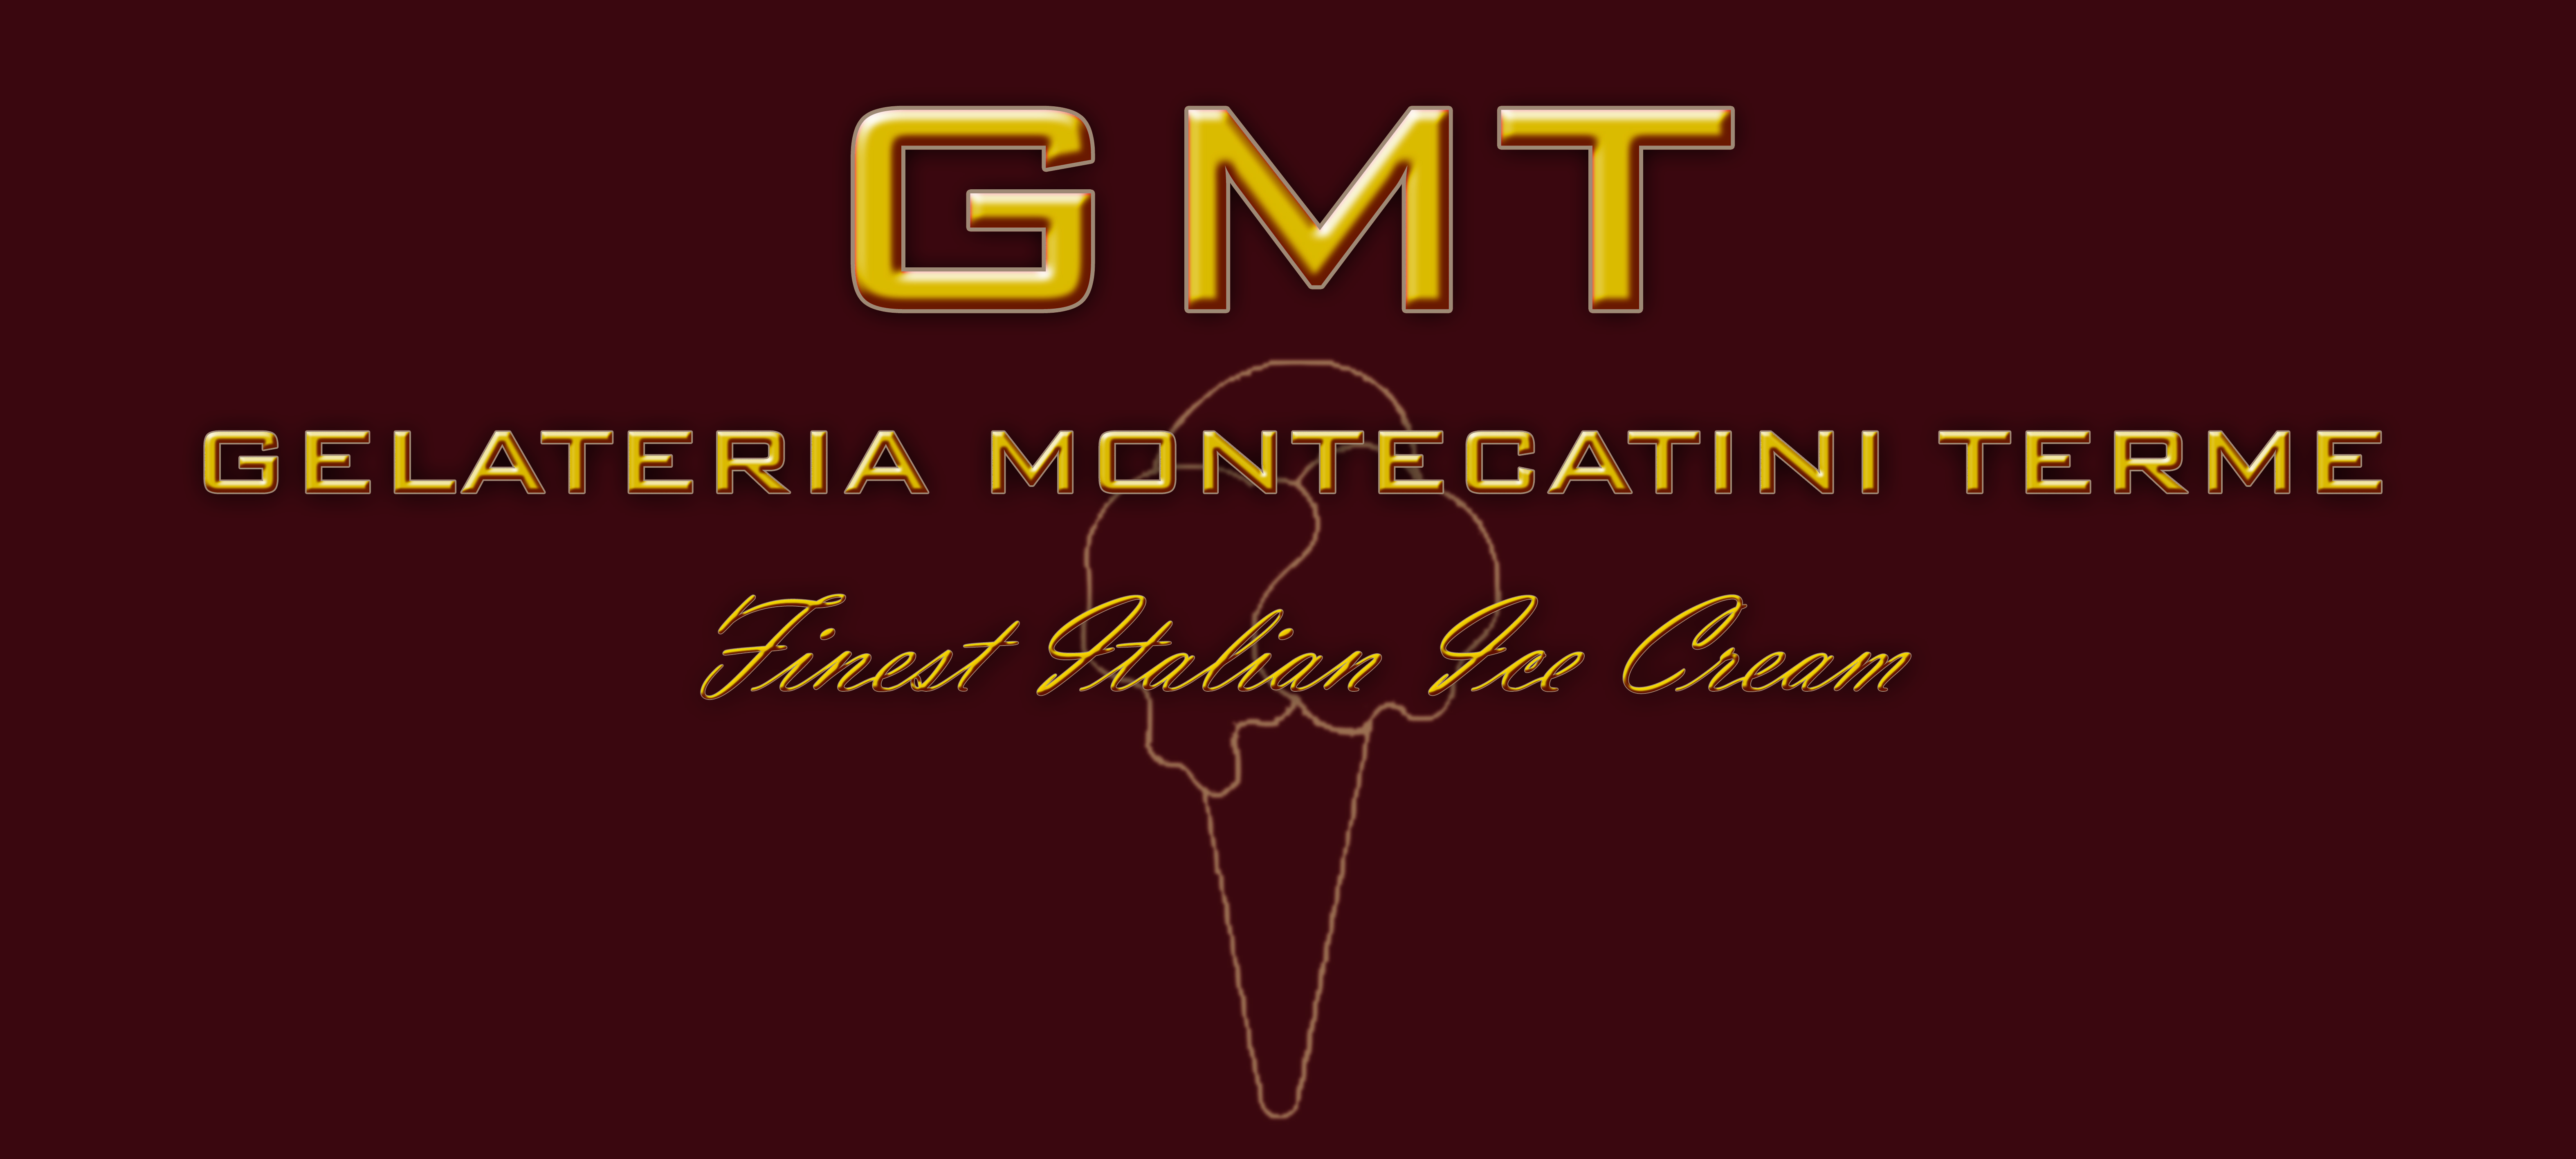 Gmt Ice Creams logo